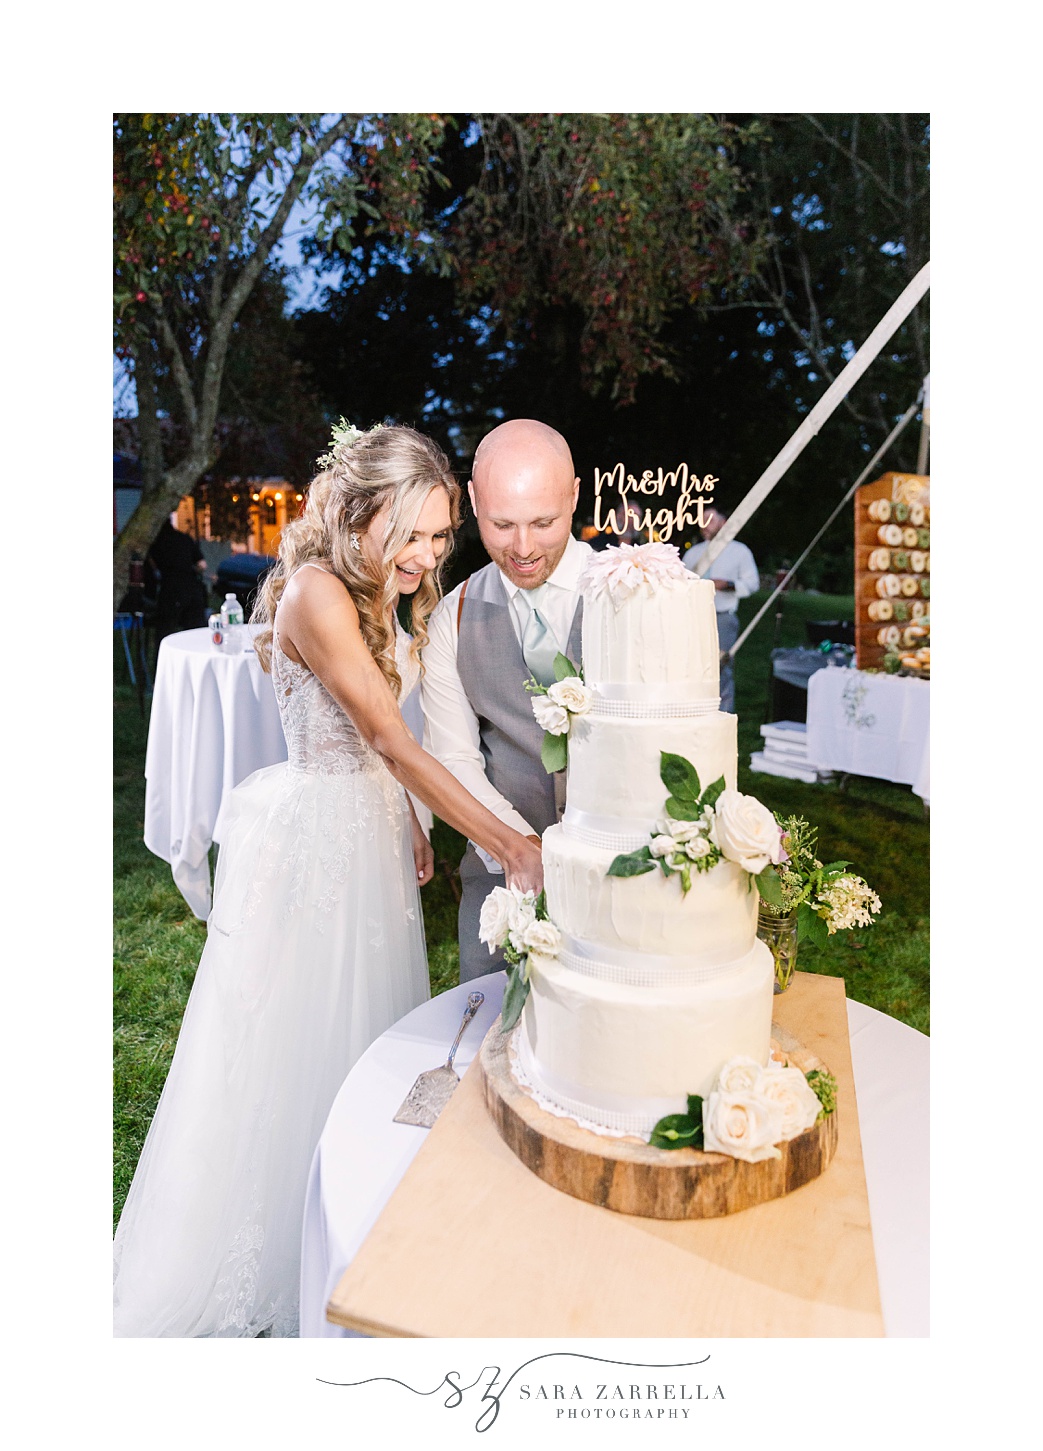 newlyweds cut wedding cake during RI wedding reception 